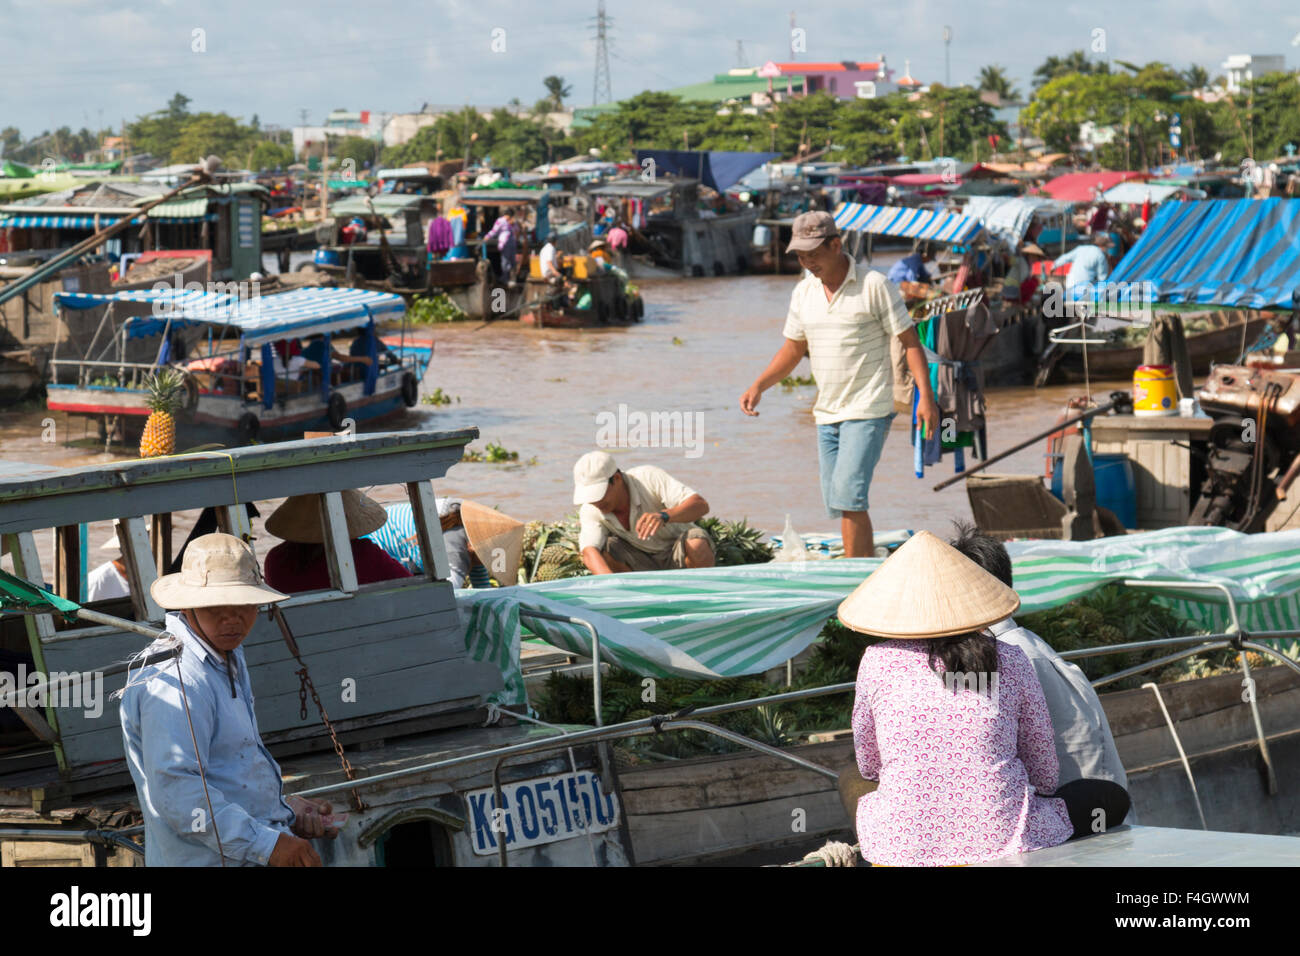 Bateaux au marché flottant de Cai Rang, Can Tho, sur le Mékong, le delta du Mékong, Vietnam Banque D'Images